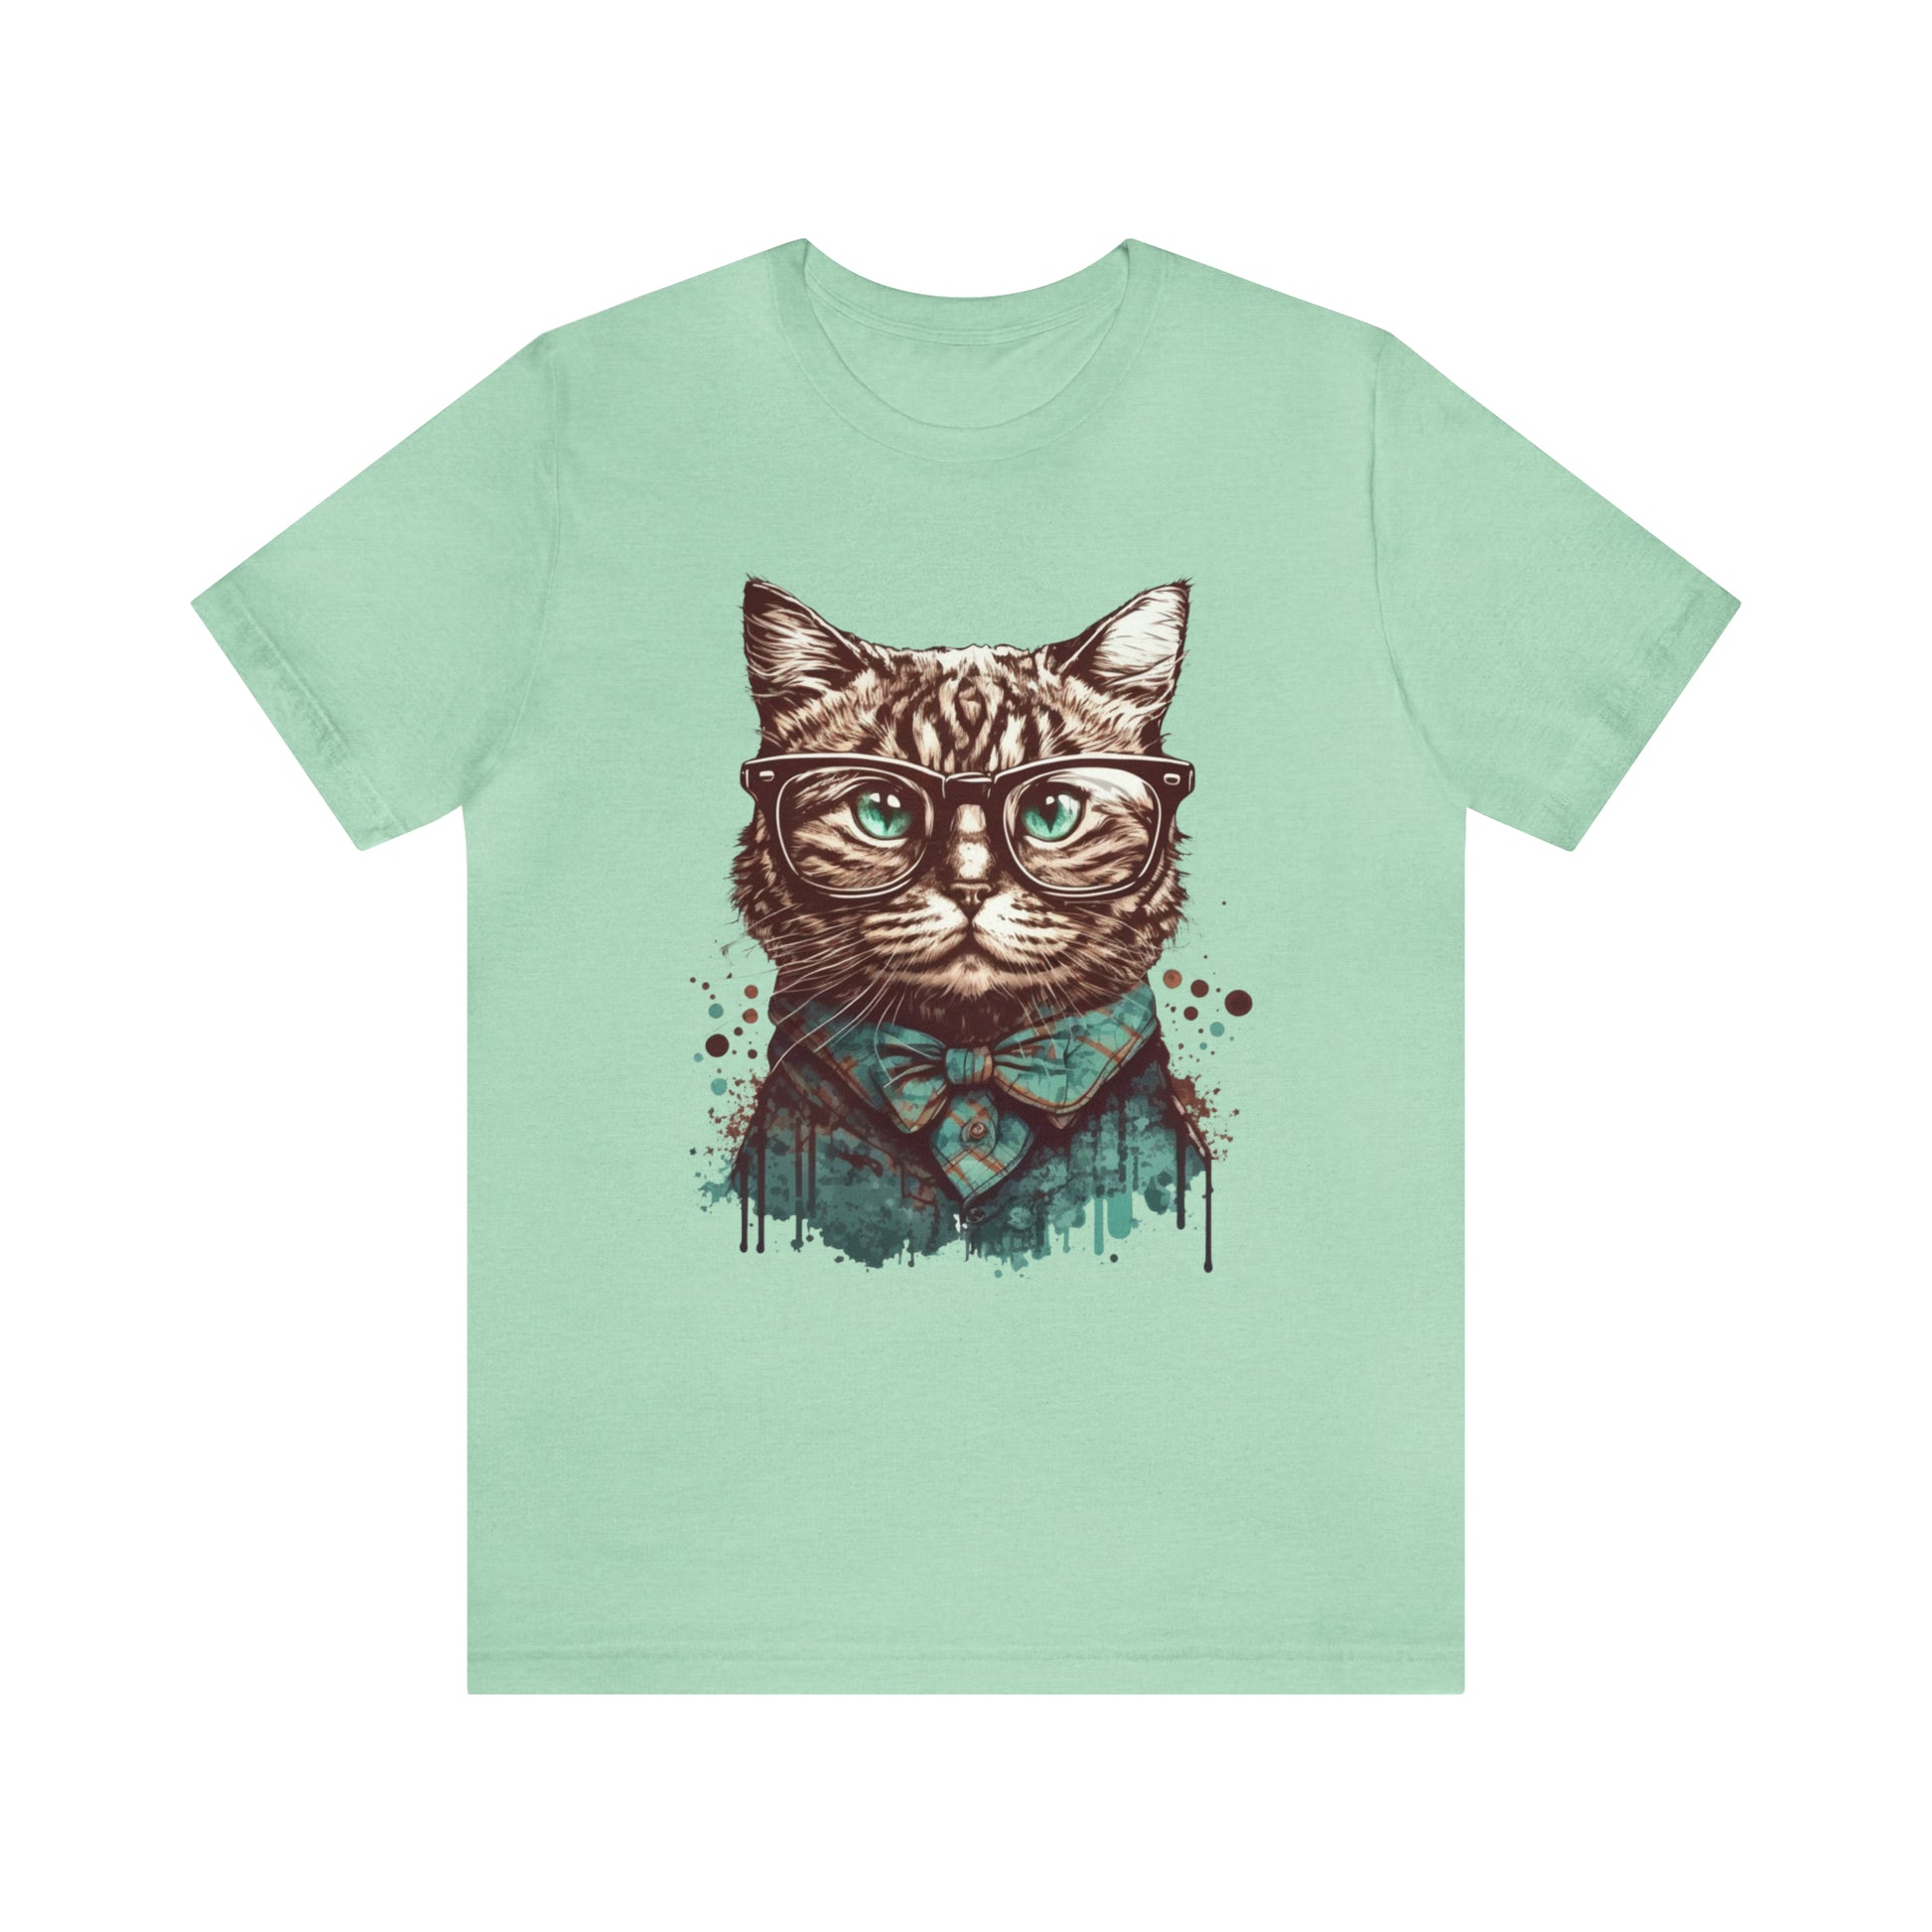 Nerdy cat T-shirt, Cute cat Unisex Jersey Short Sleeve Tee shirt, Geeky cat tshirt, Tabby cat shirt, Cool Cat shirt, gifts for cat lovers